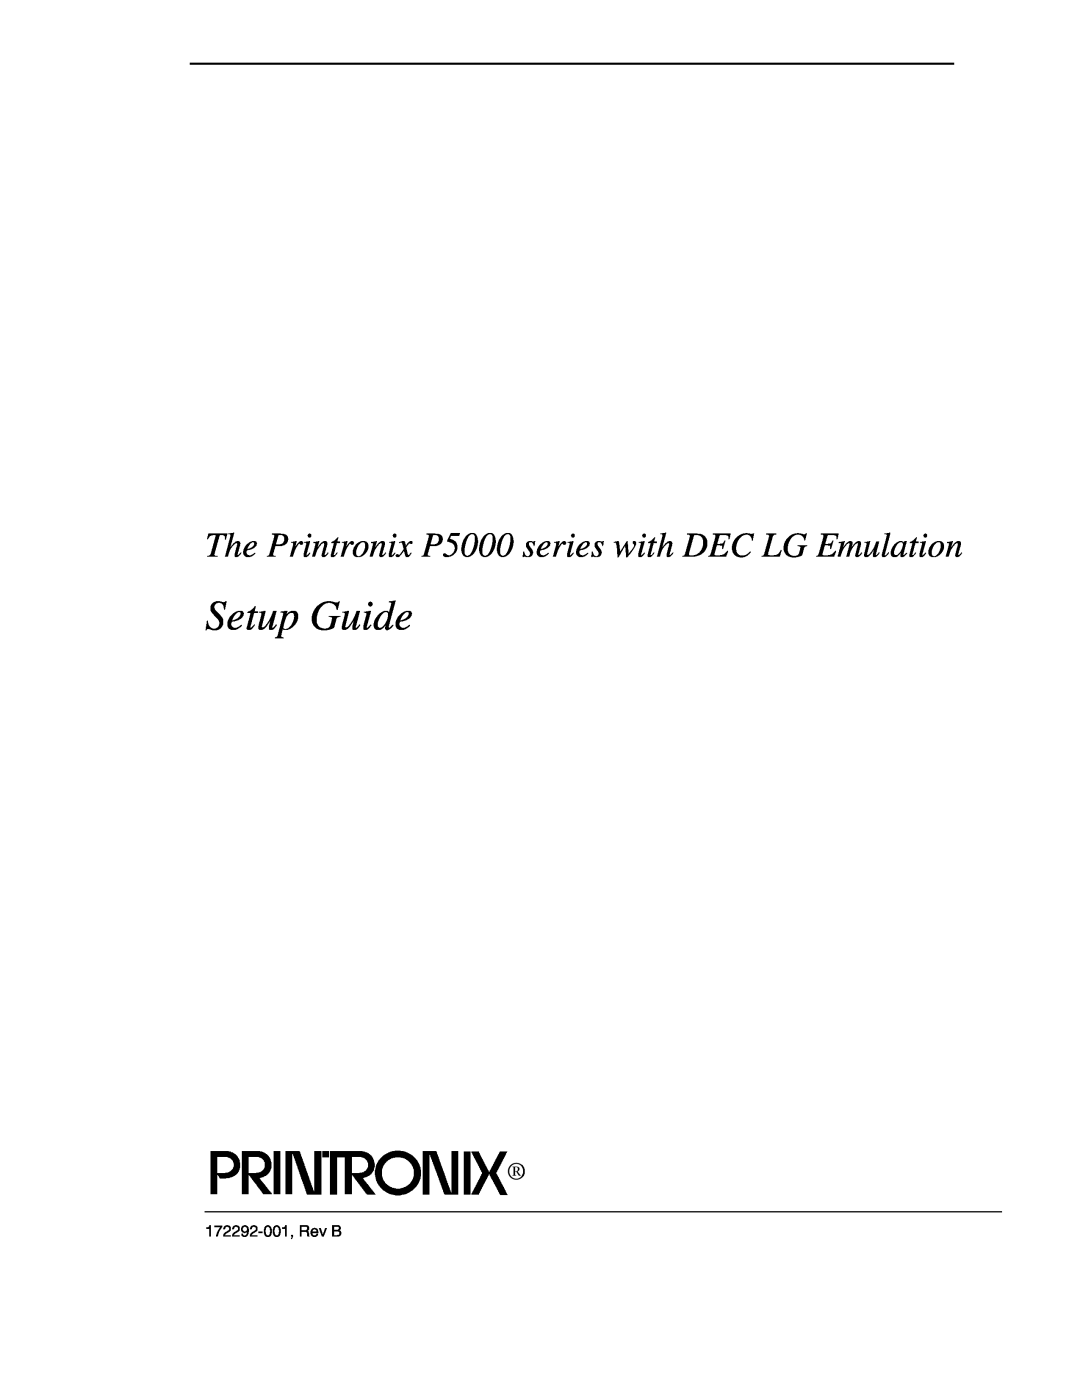 Compaq P5000 Series setup guide Setup Guide, The Printronix P5000 series with DEC LG Emulation, 172292-001, Rev B 